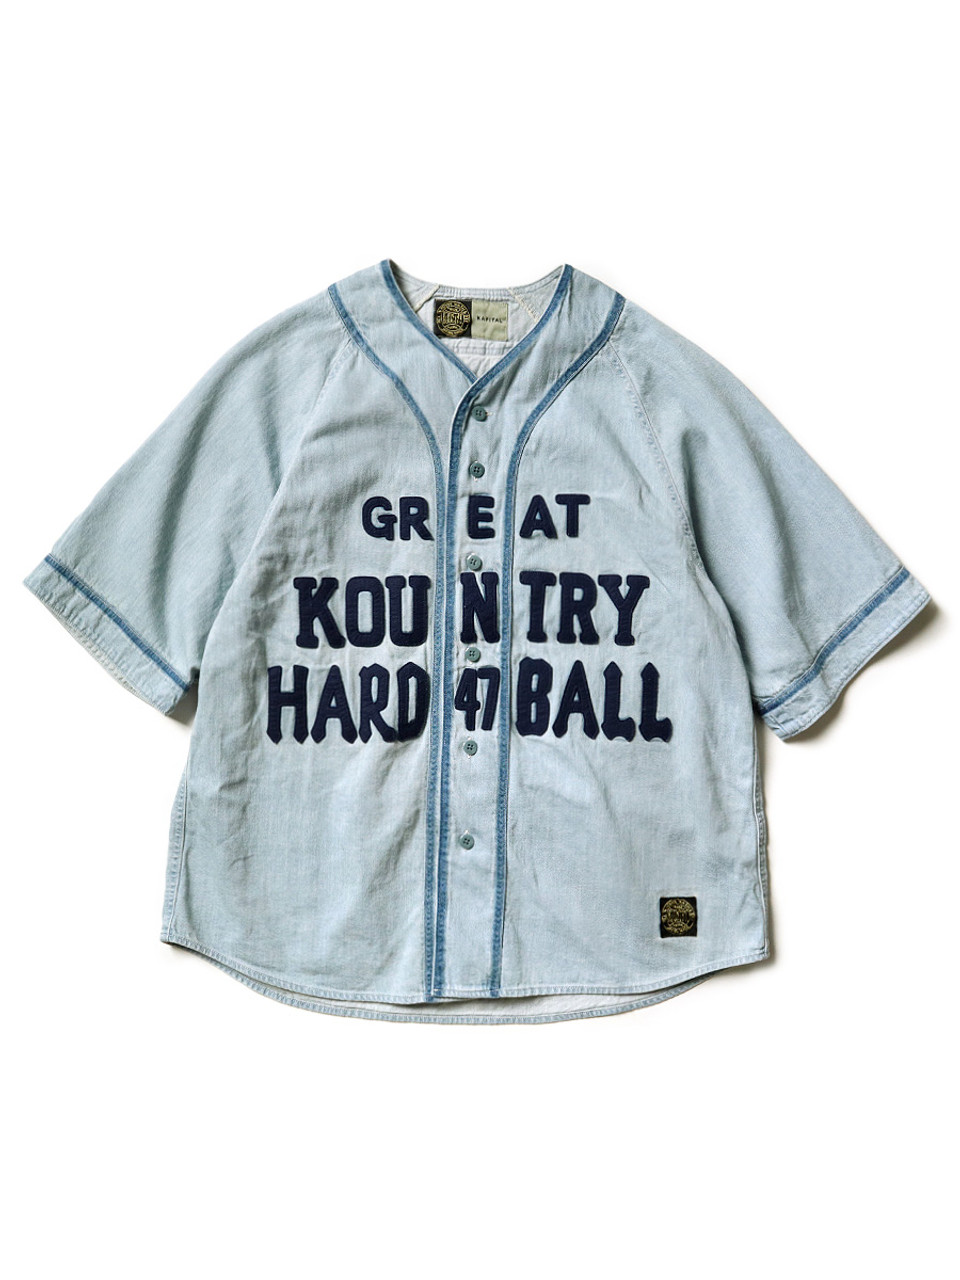 KAPITAL Shirt (Short Sleeve) 8Oz Denim GREAT KOUNTRY Baseball Shirt